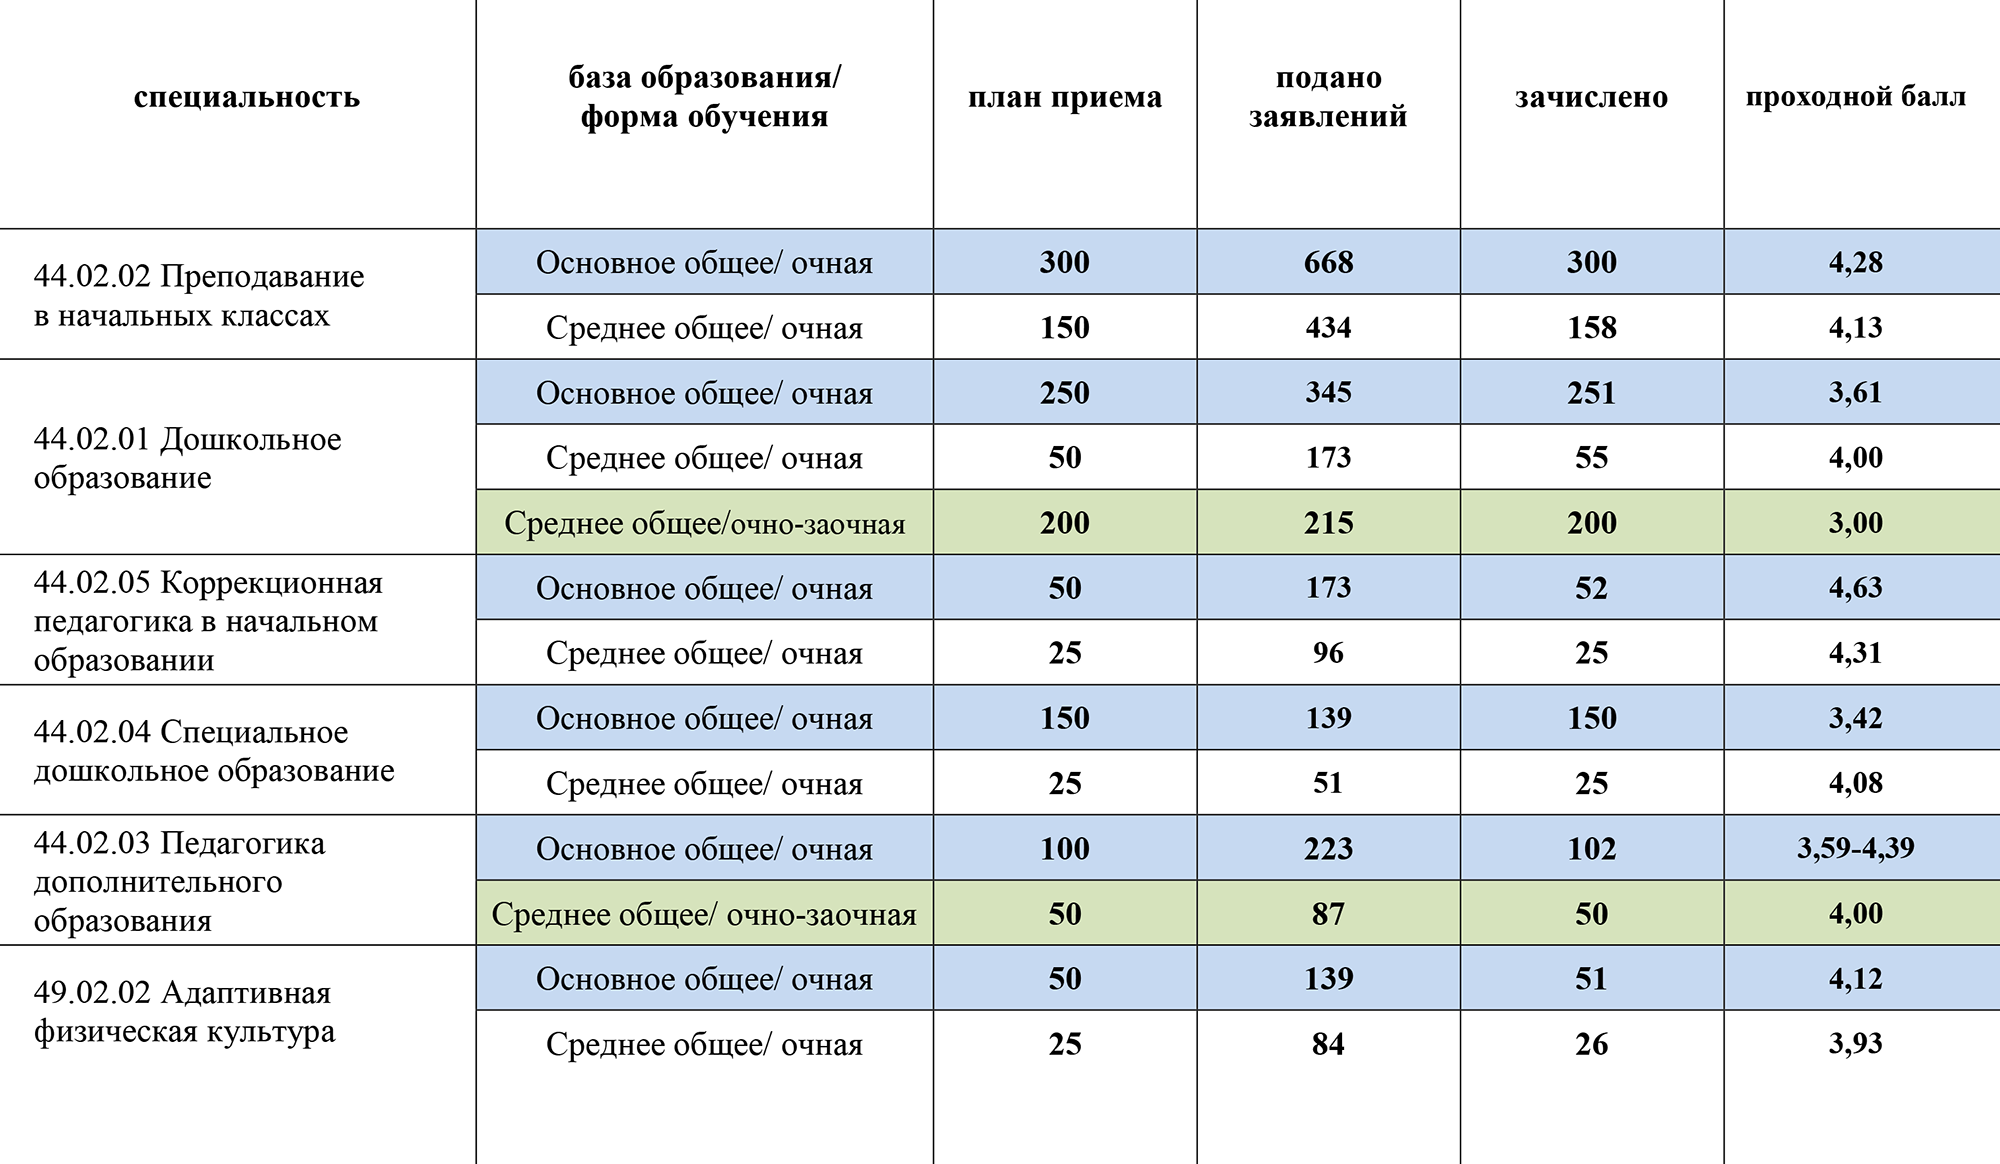 Некрасовский педагогический колледж Санкт-Петербурга публикует только проходной балл абитуриентов 2023 года. Средний балл заведомо выше